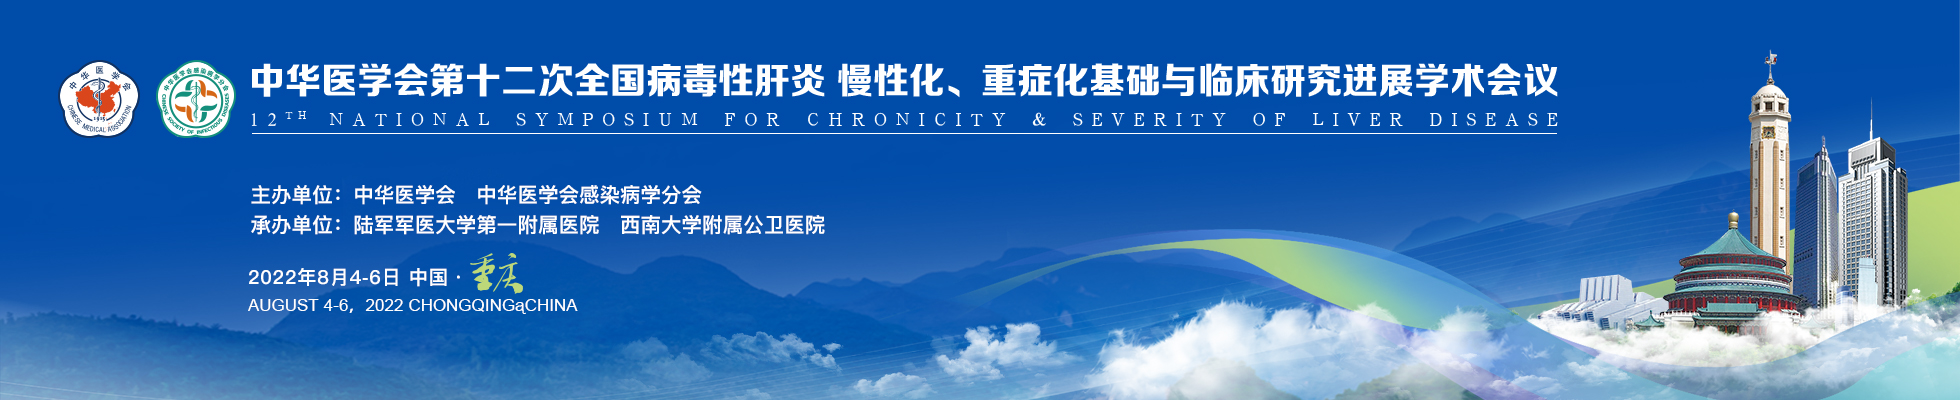 中华医学会第十二次全国病毒性肝炎慢性化、重症化基础与临床研究进展学术会议